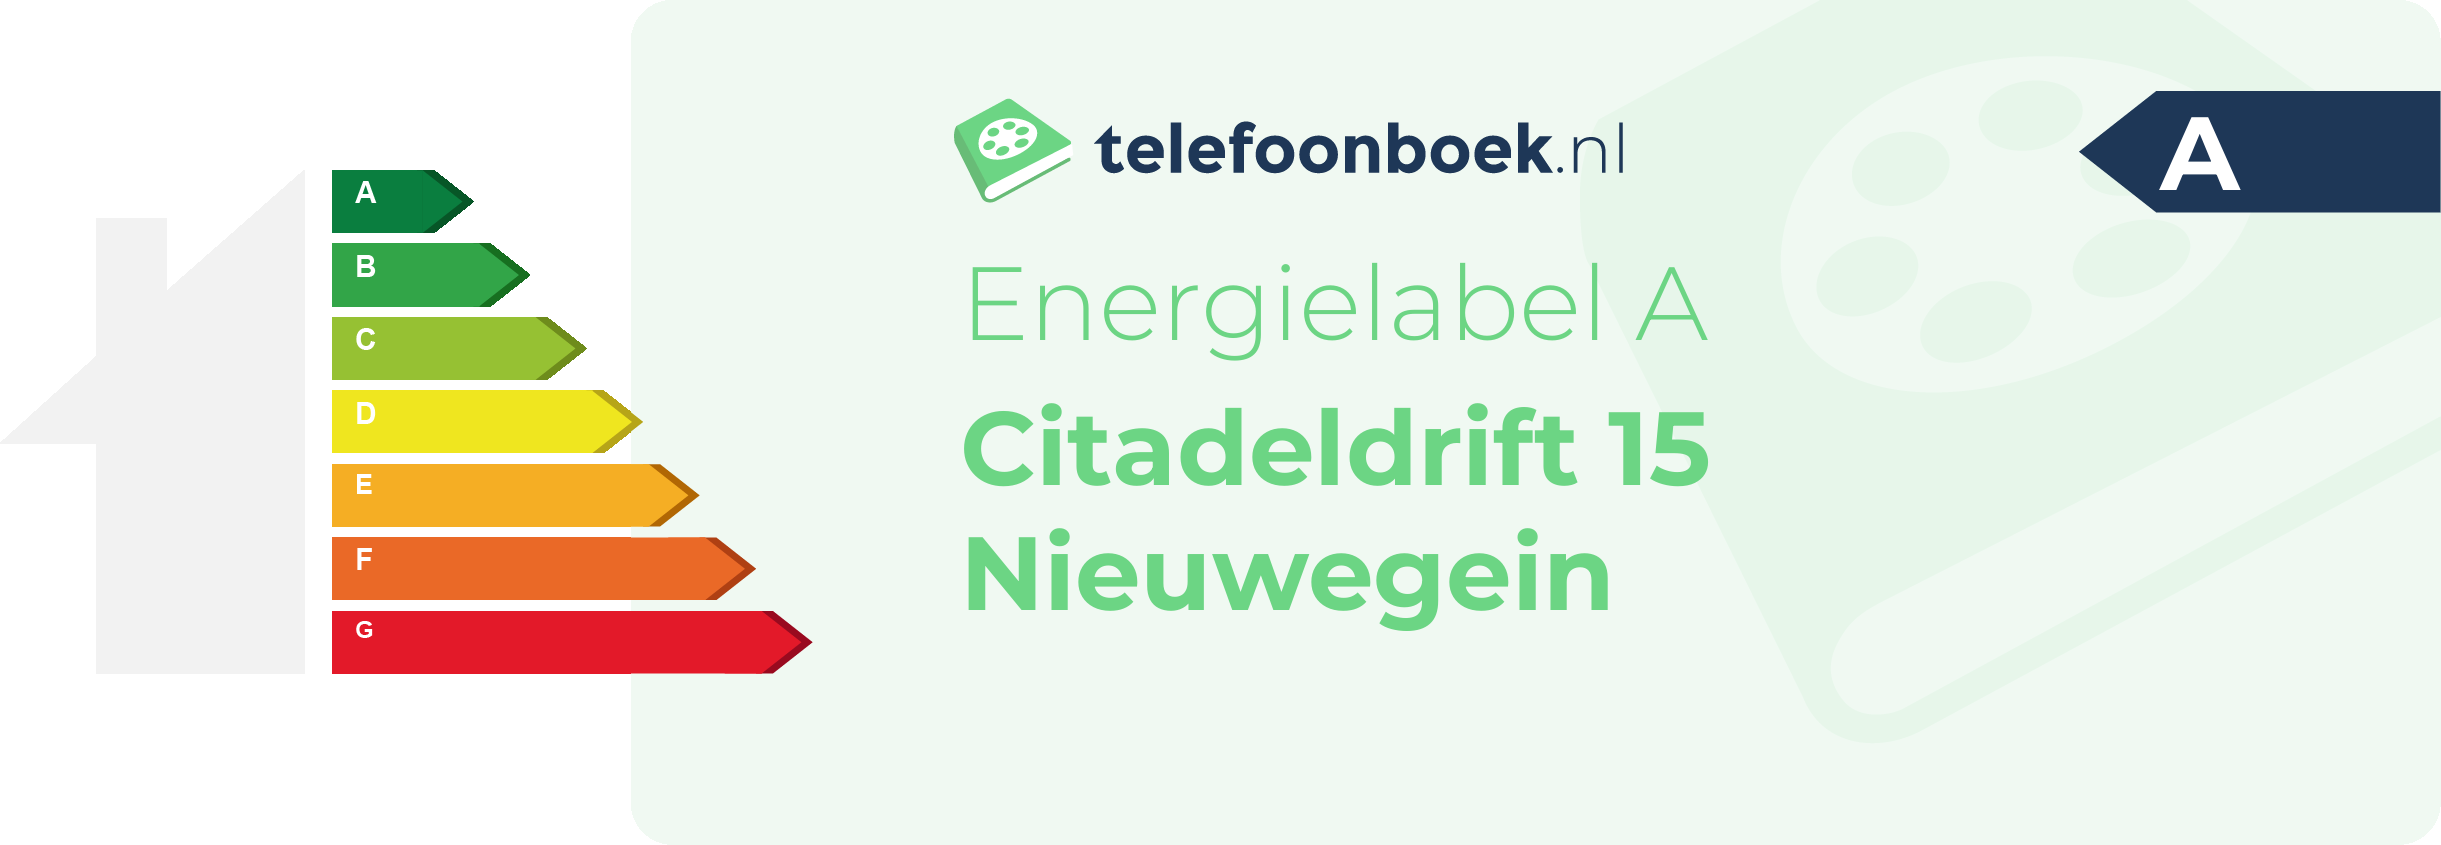 Energielabel Citadeldrift 15 Nieuwegein